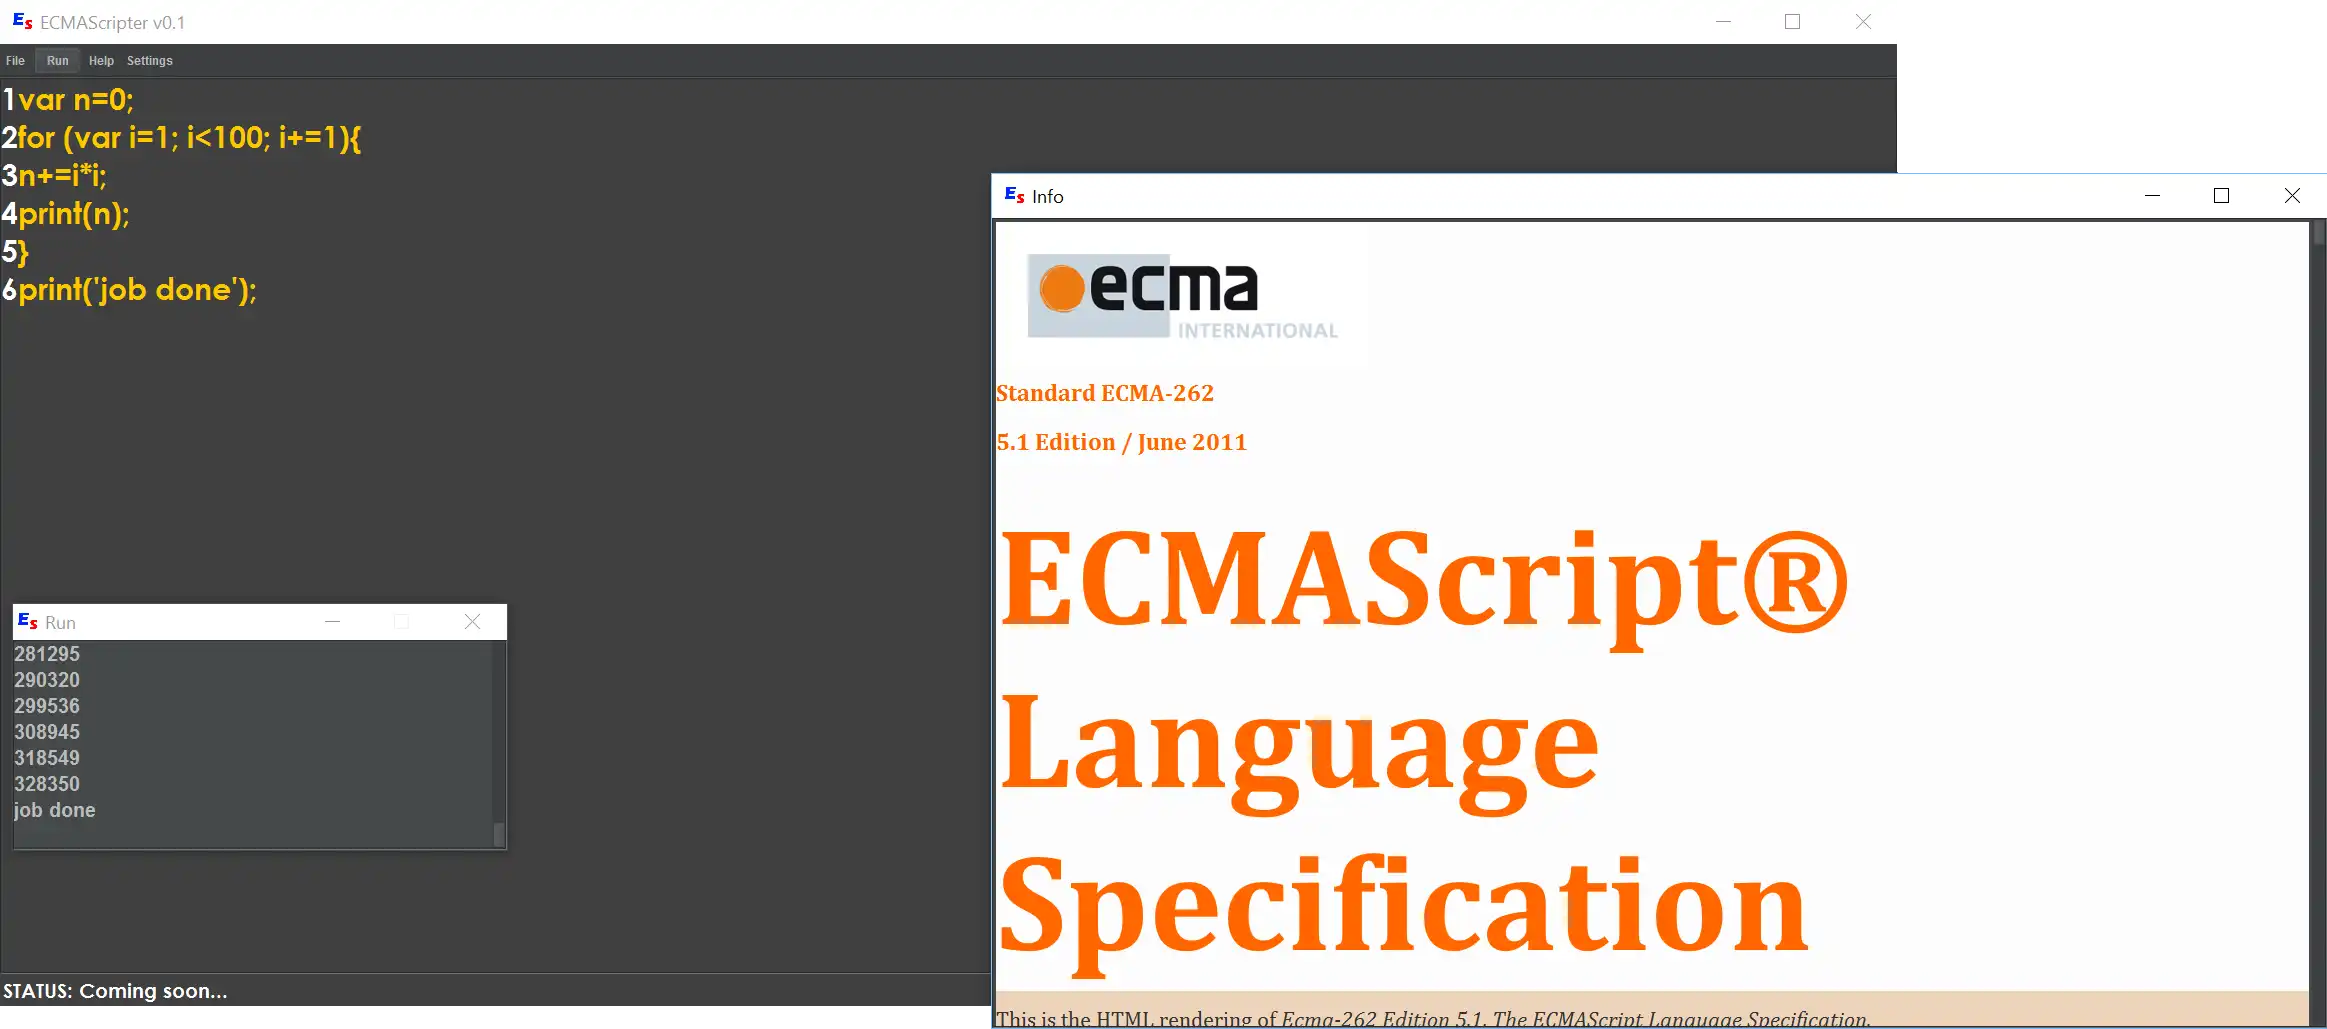 הורד את כלי האינטרנט או אפליקציית האינטרנט ECMAScripter